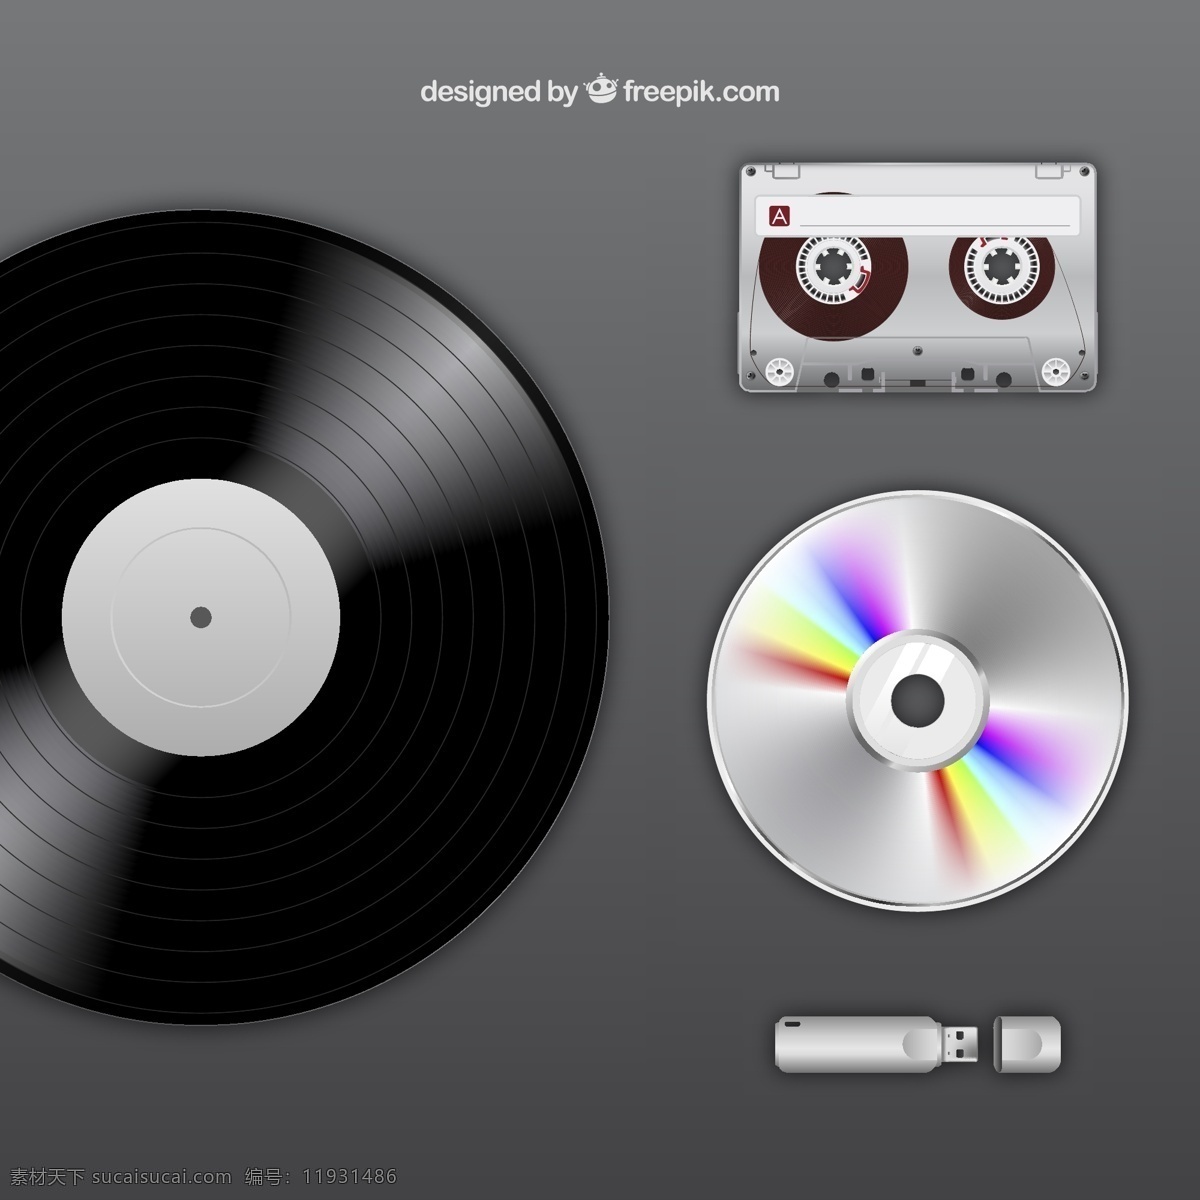 复古音乐图标 复古 cd 磁带 进化 播放器 设备 音乐 存储 光盘 垂直 磁盘 vynil 技术 磁性 结构小巧 紧凑